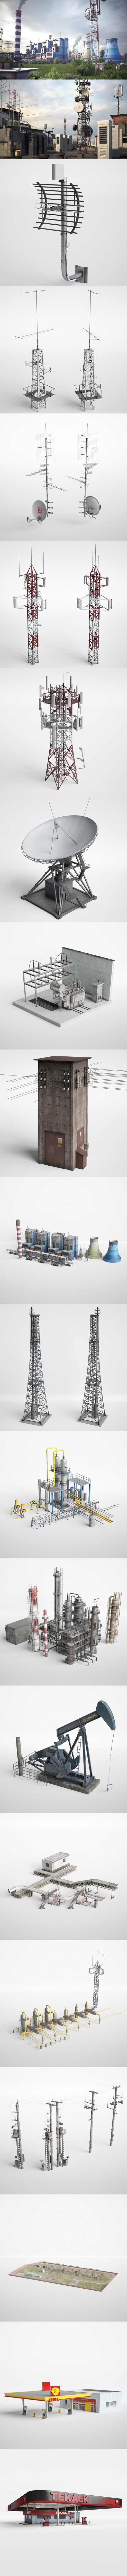 高品质的37个化工厂工业园区道具建筑模型3D模型大集合插图